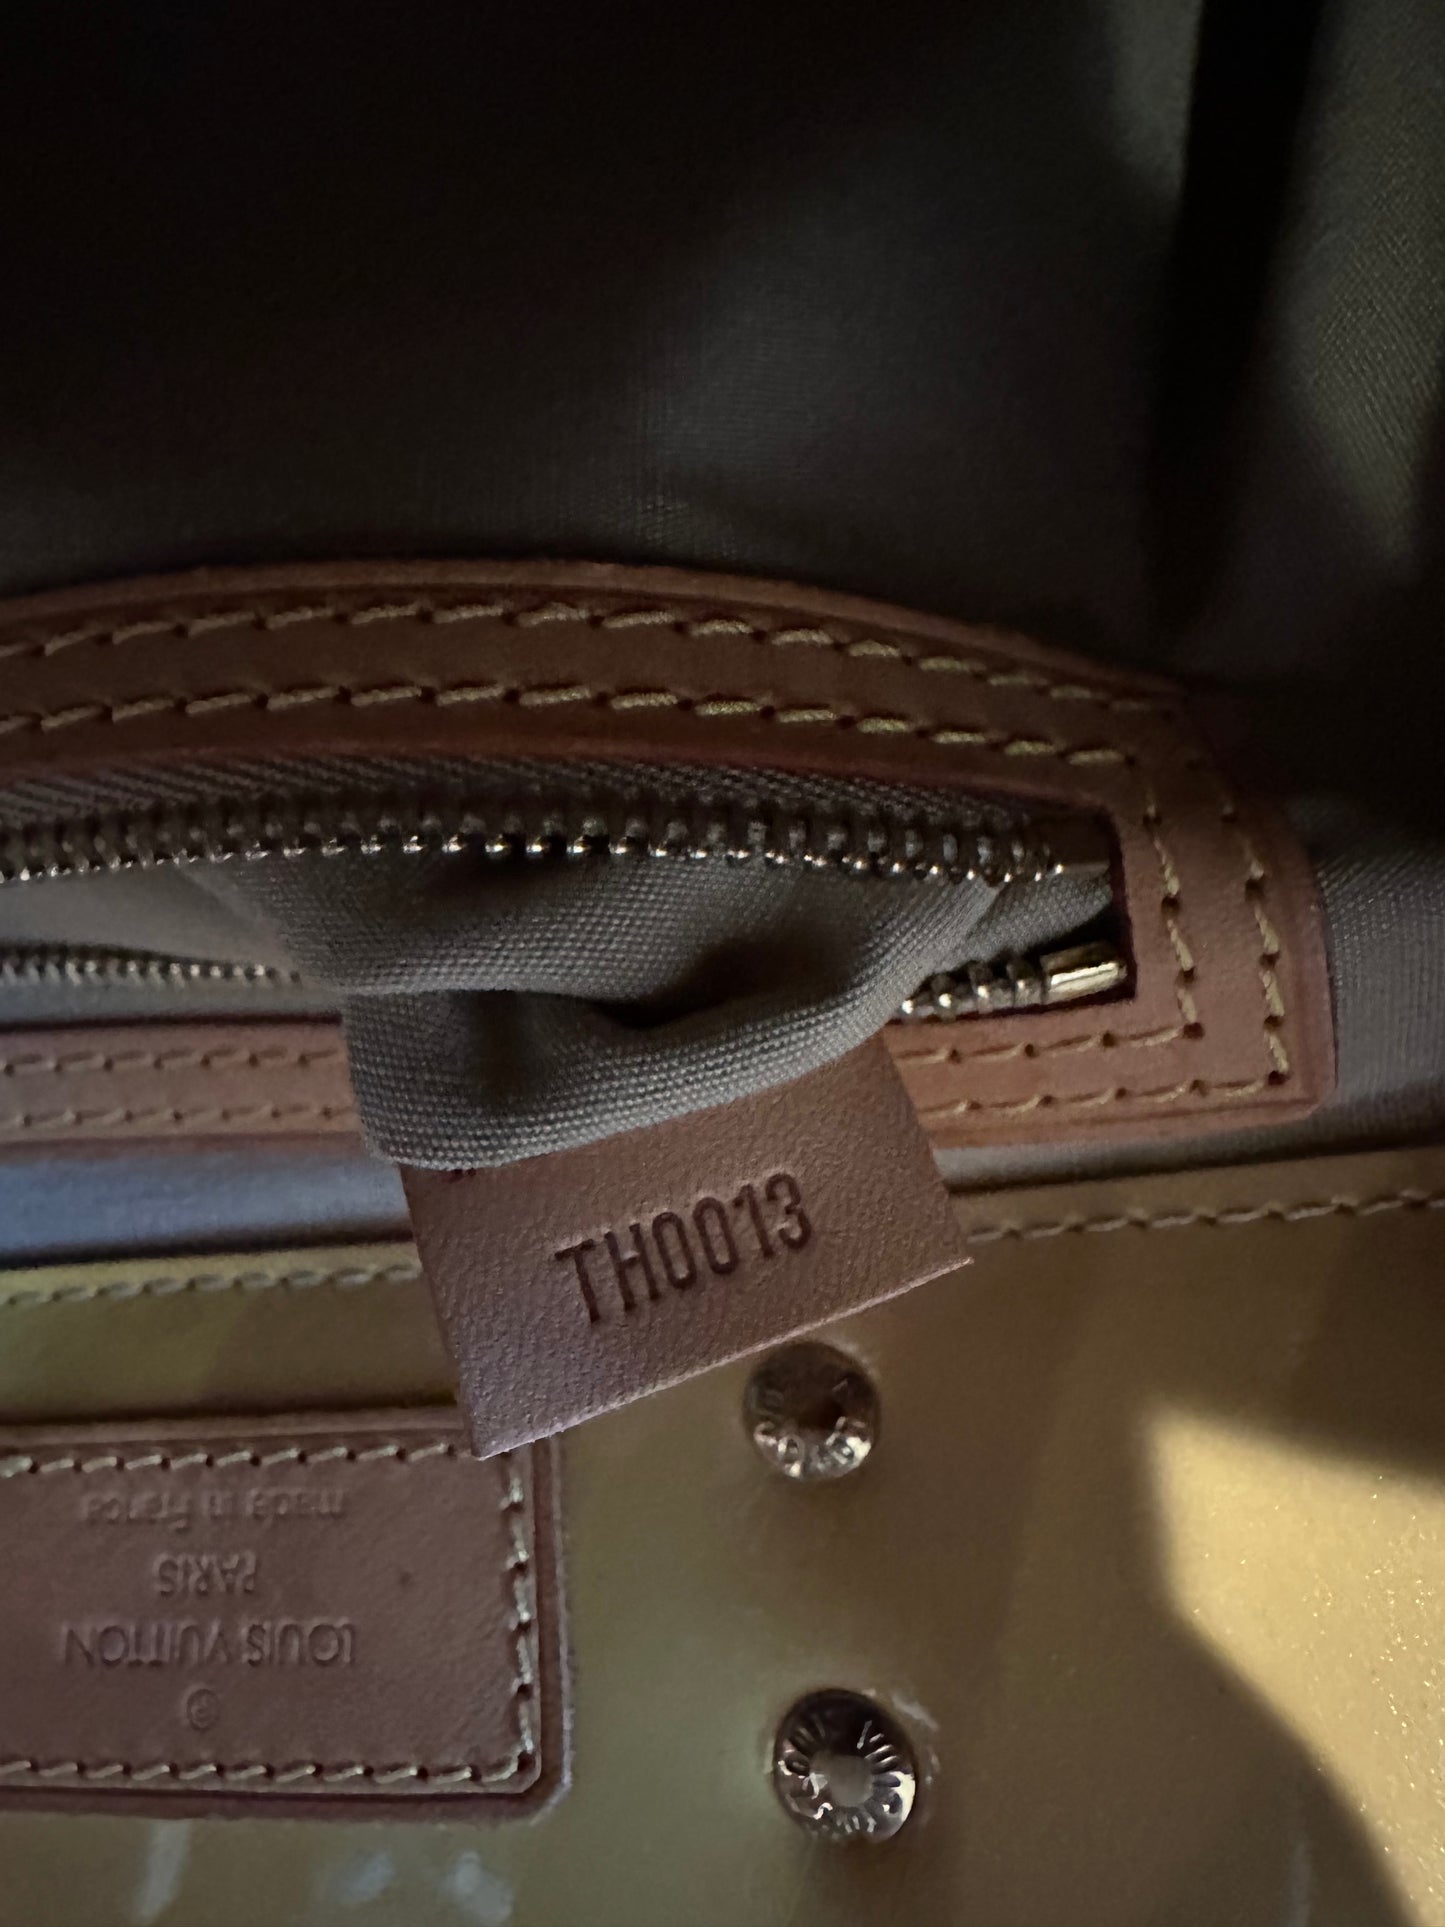 Pre-owned Authentic Louis Vuitton Reade PM Vernis Handbag